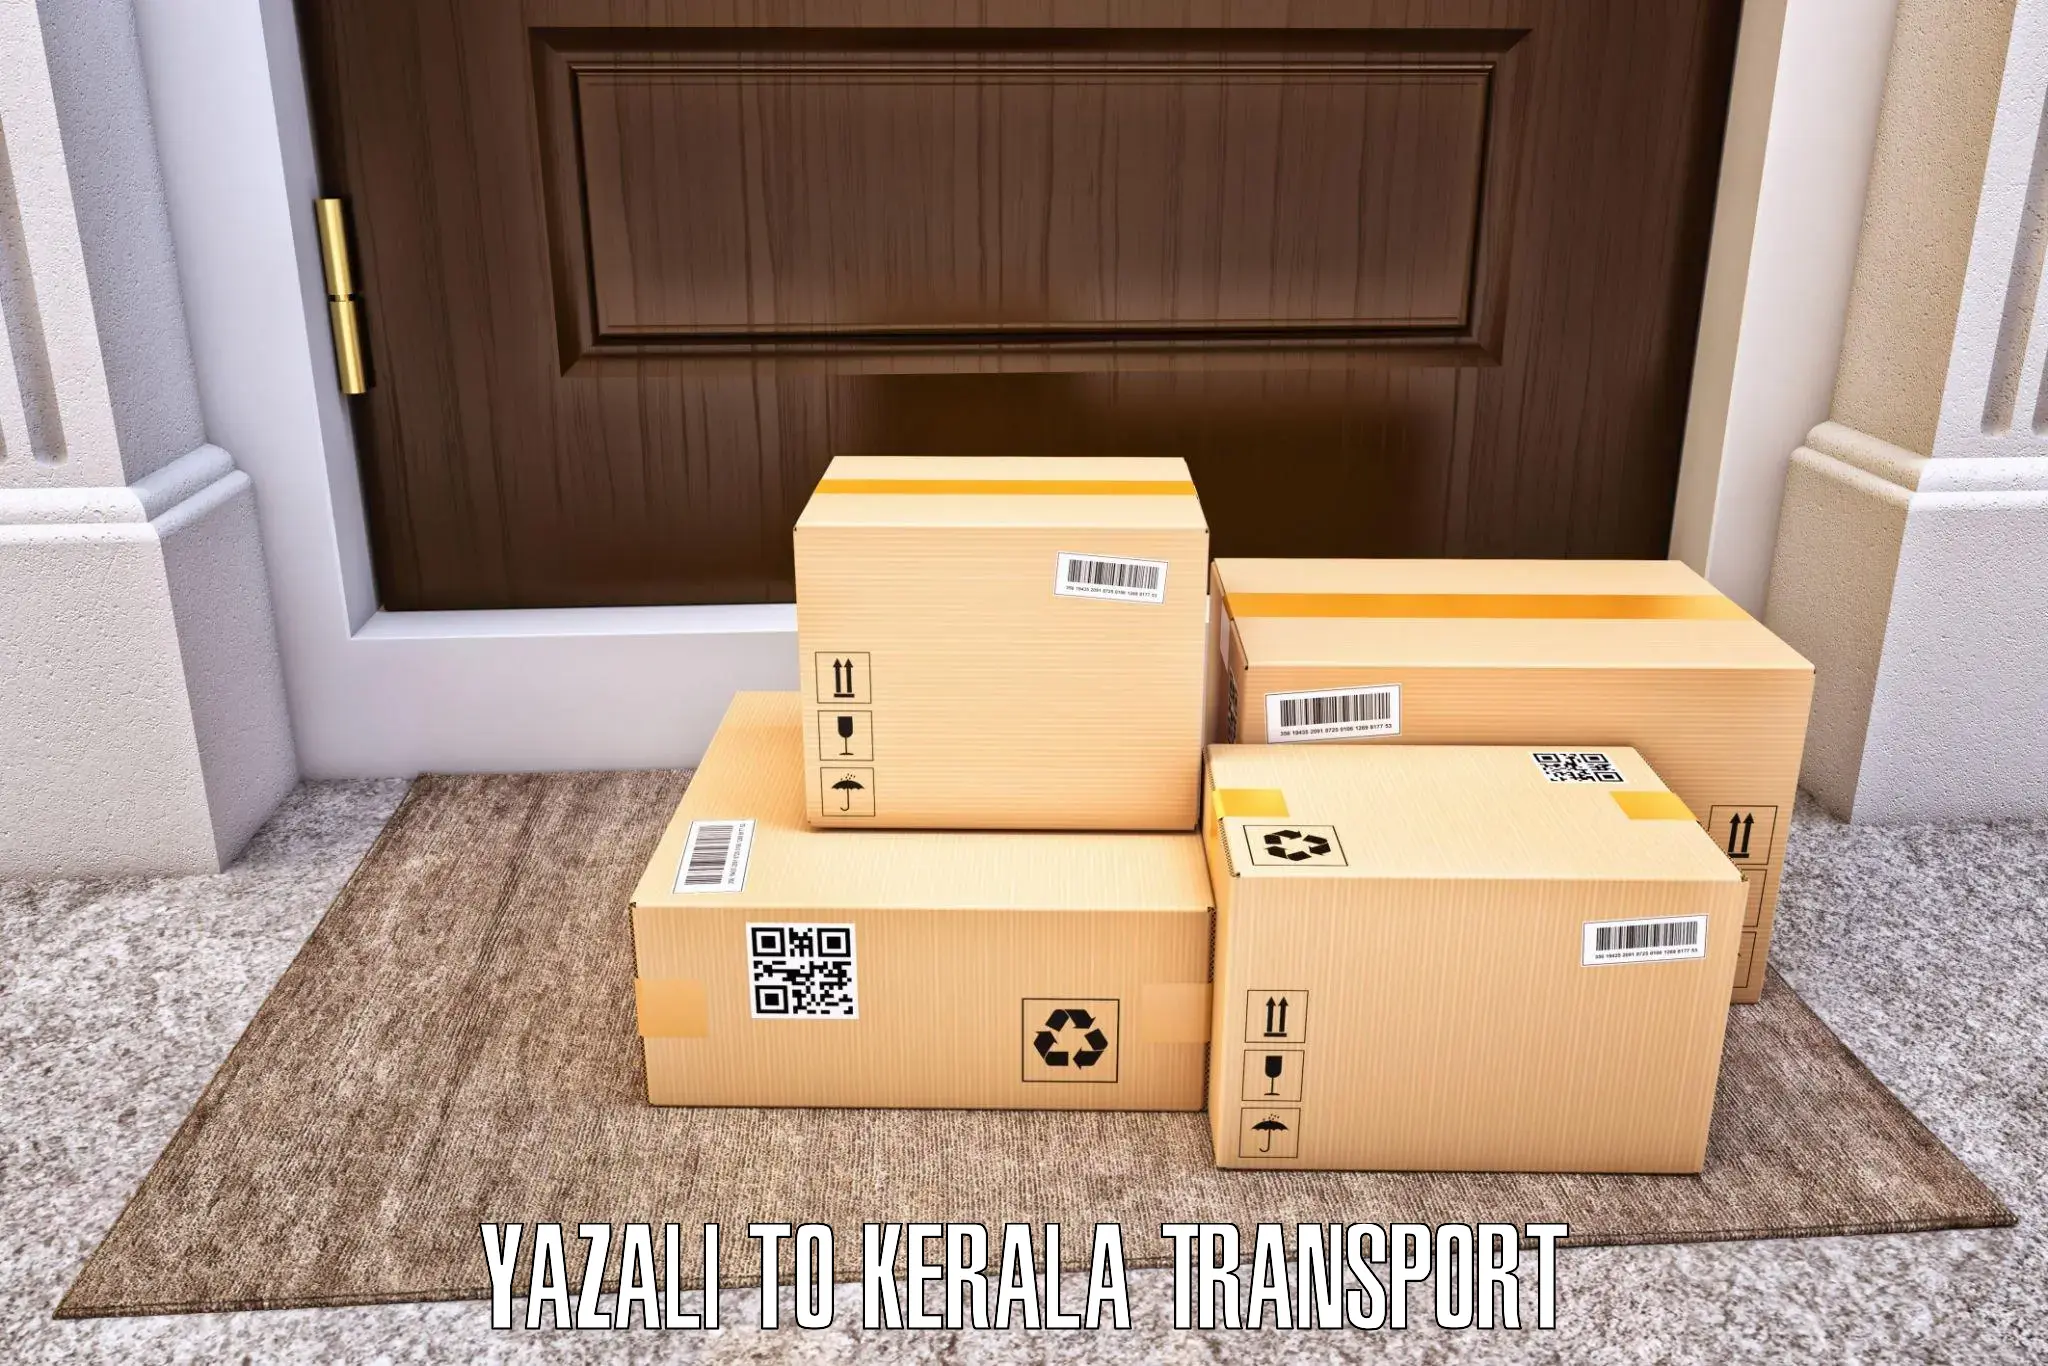 Container transport service Yazali to Karukachal